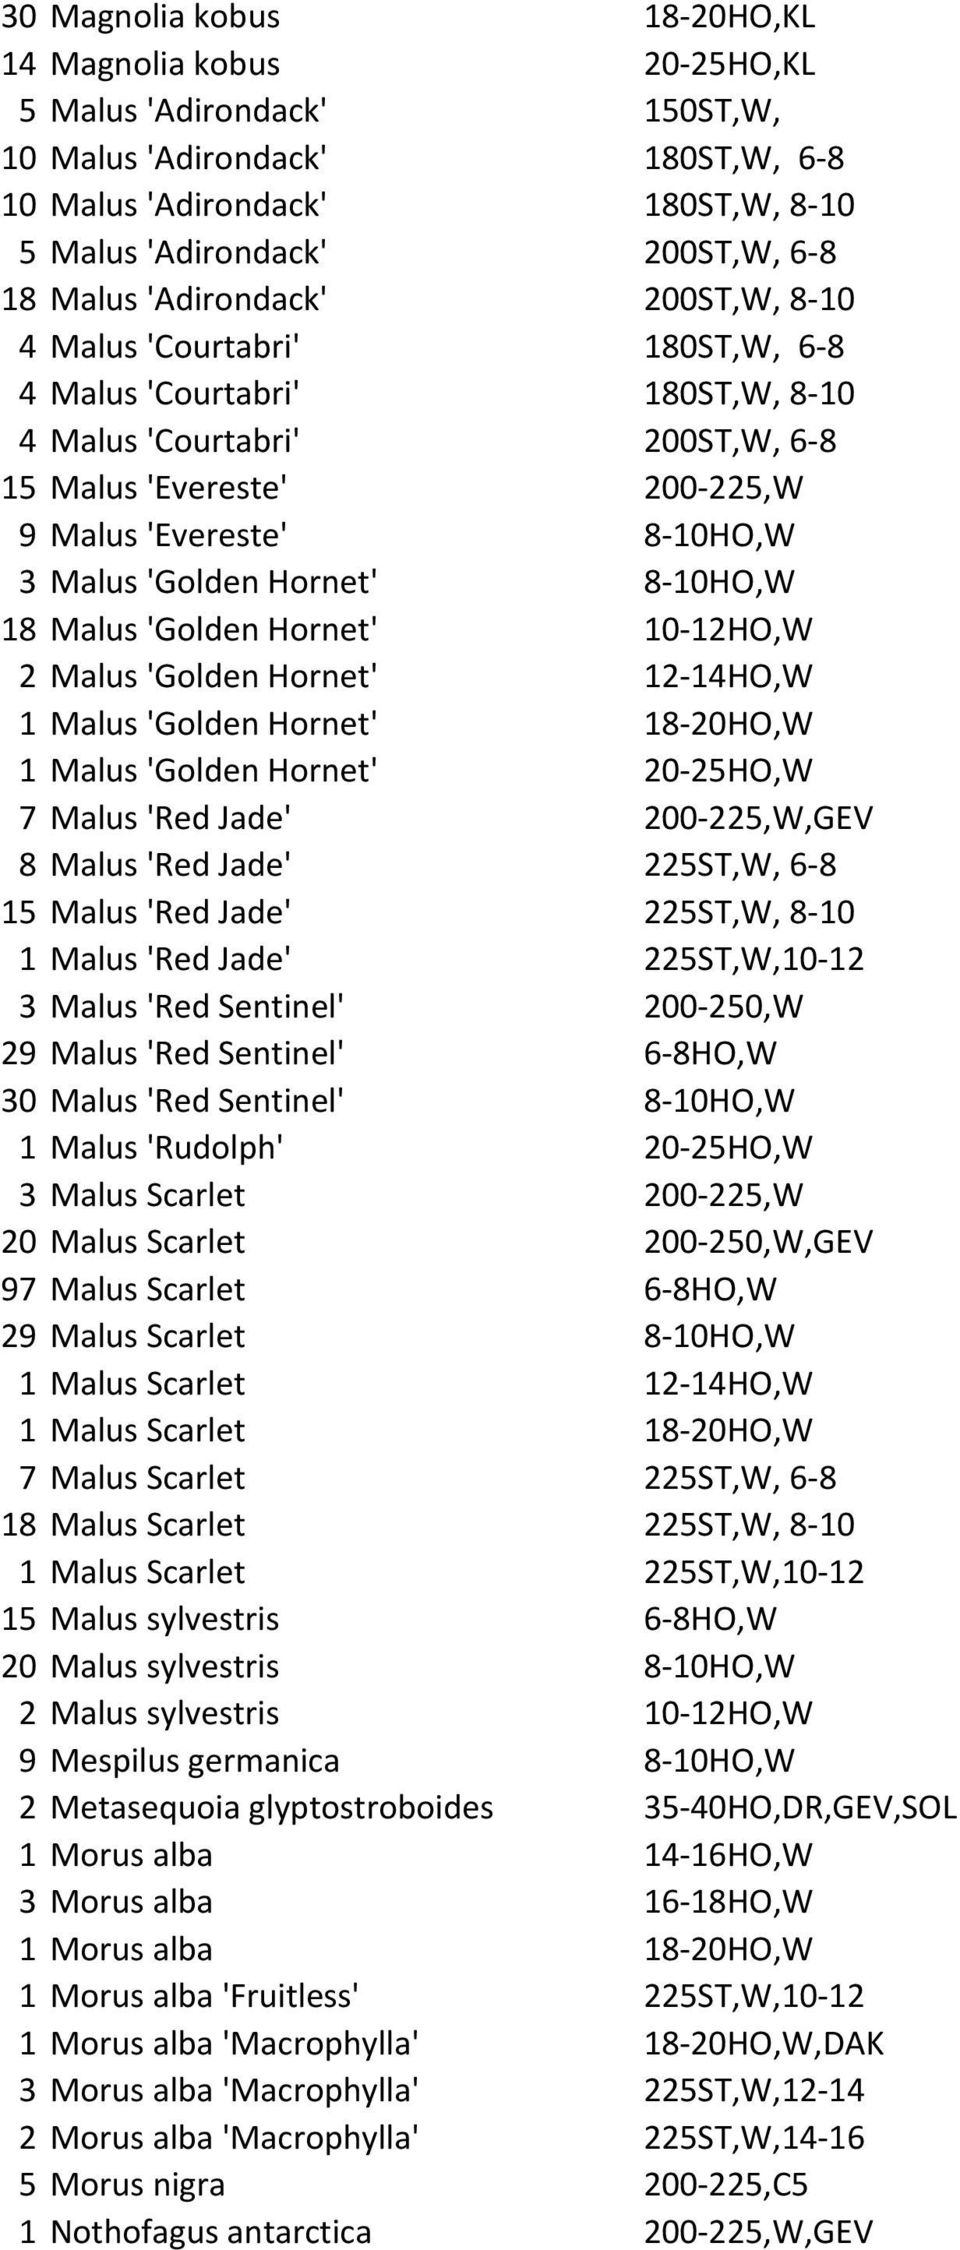 'Golden Hornet' 8-10HO,W 18 Malus 'Golden Hornet' 10-12HO,W 2 Malus 'Golden Hornet' 12-14HO,W 1 Malus 'Golden Hornet' 18-20HO,W 1 Malus 'Golden Hornet' 20-25HO,W 7 Malus 'Red Jade' 200-225,W,GEV 8